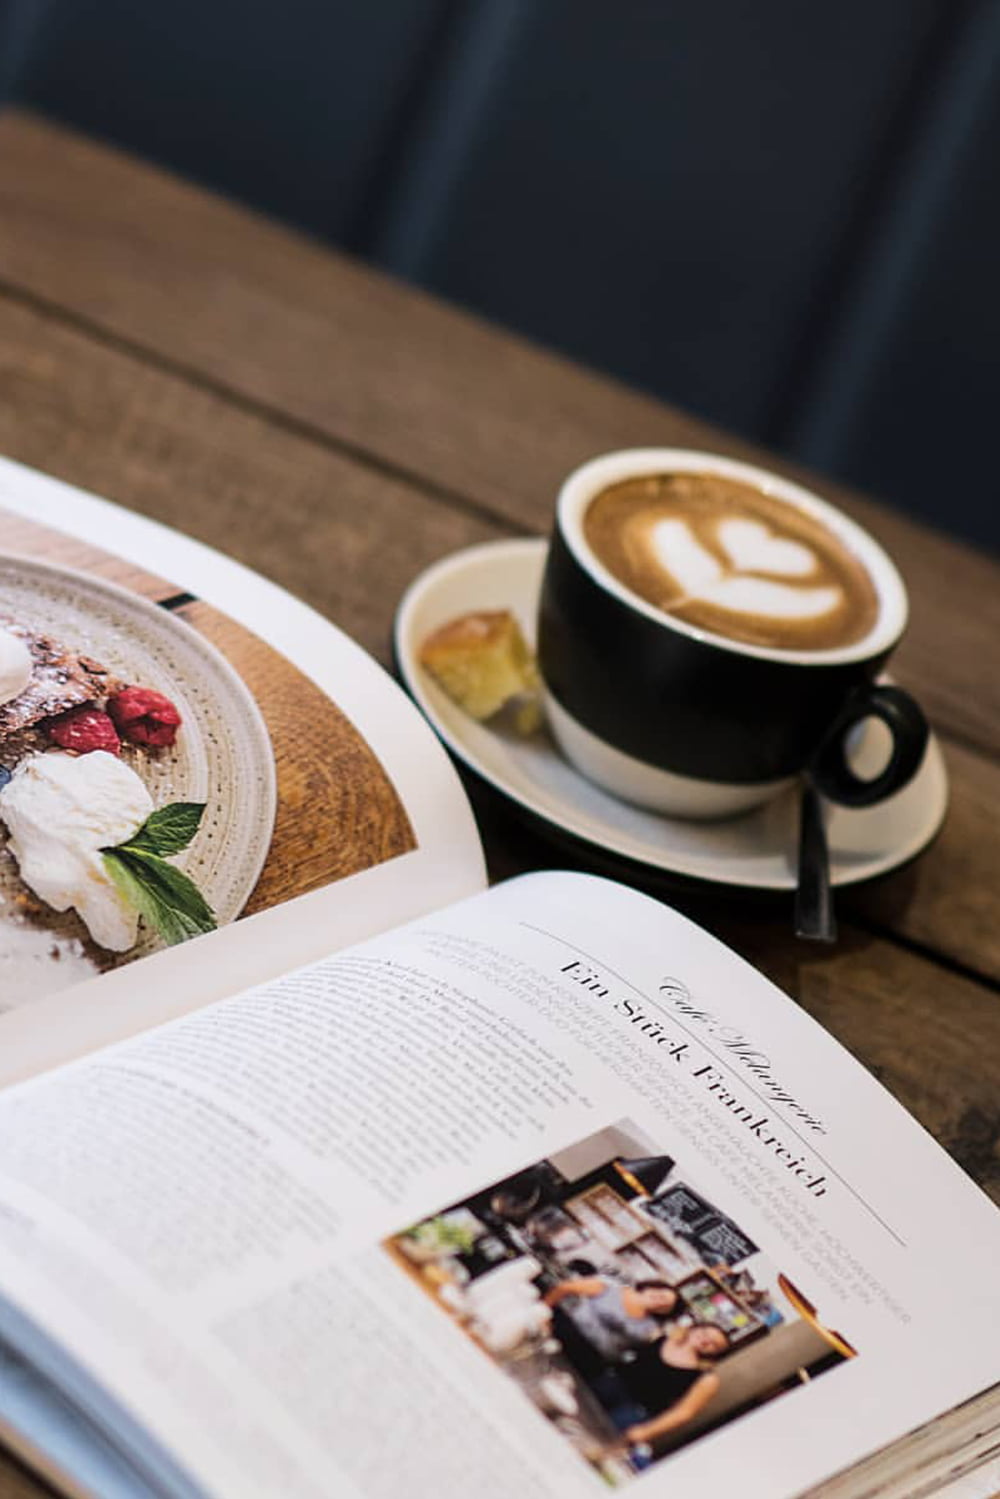 Buch mit Artikel "Ein Stück Frankreich inmitten der Wiener Kaffeehauskultur"